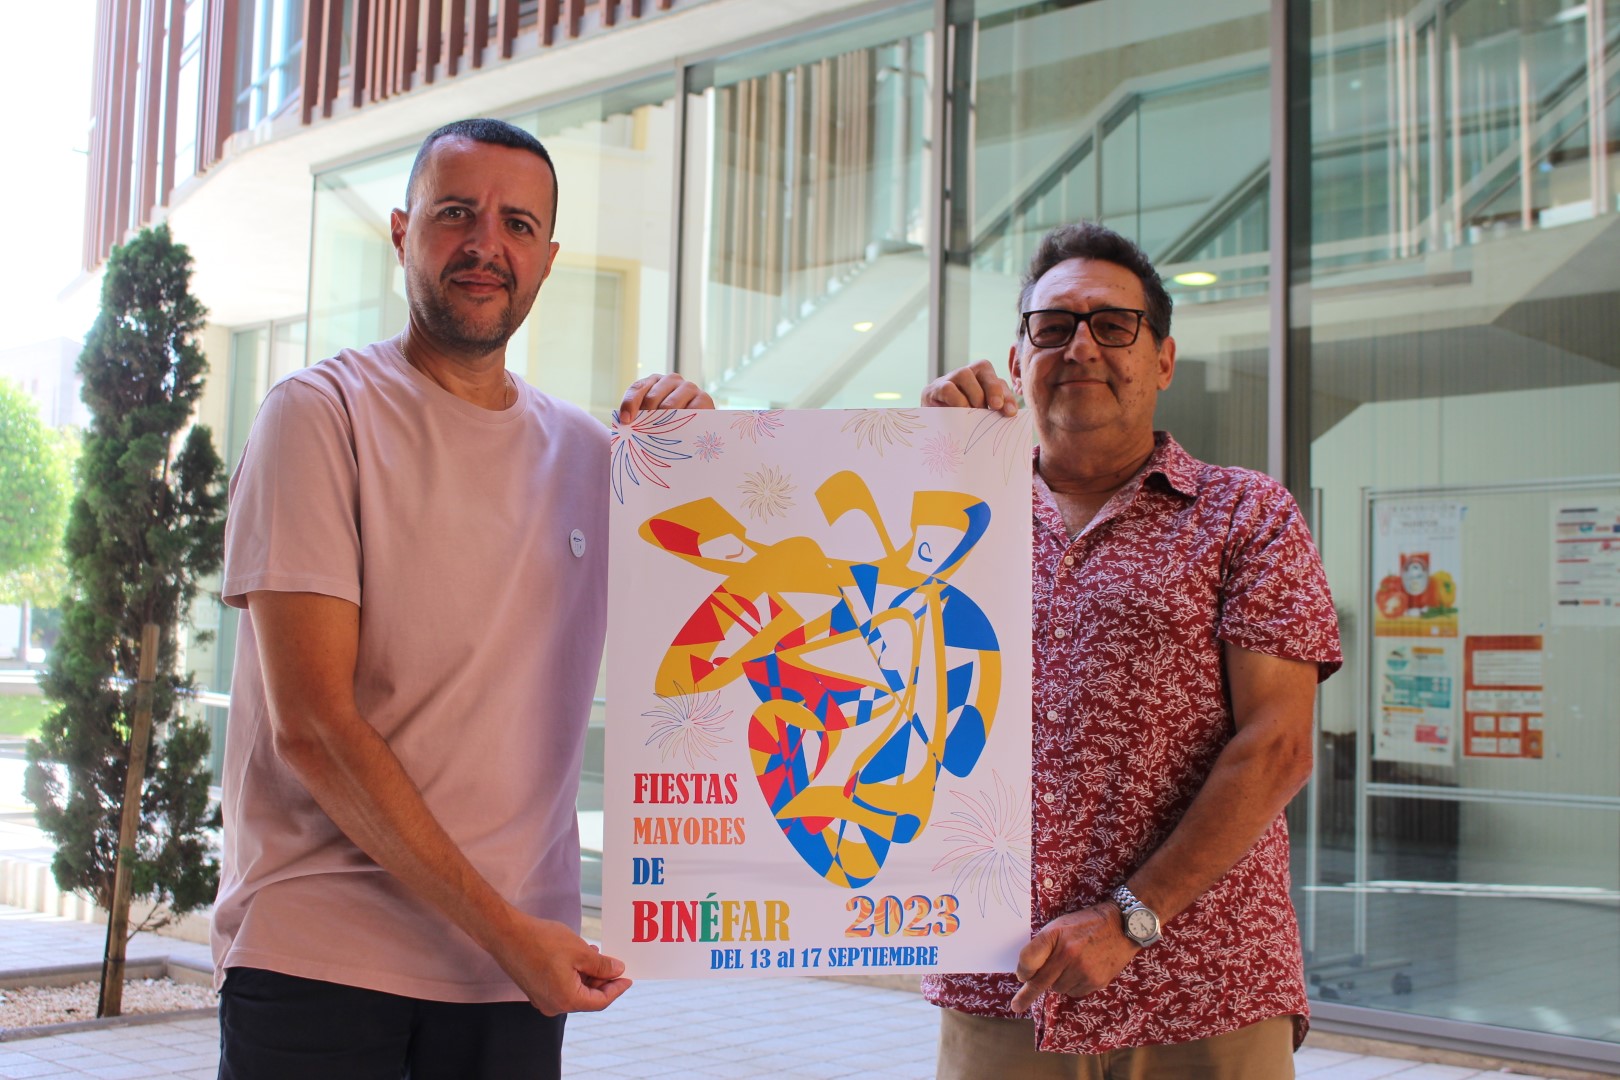 La jota es el tema central del cartel anunciador de las fiestas mayores de Binéfar 2023